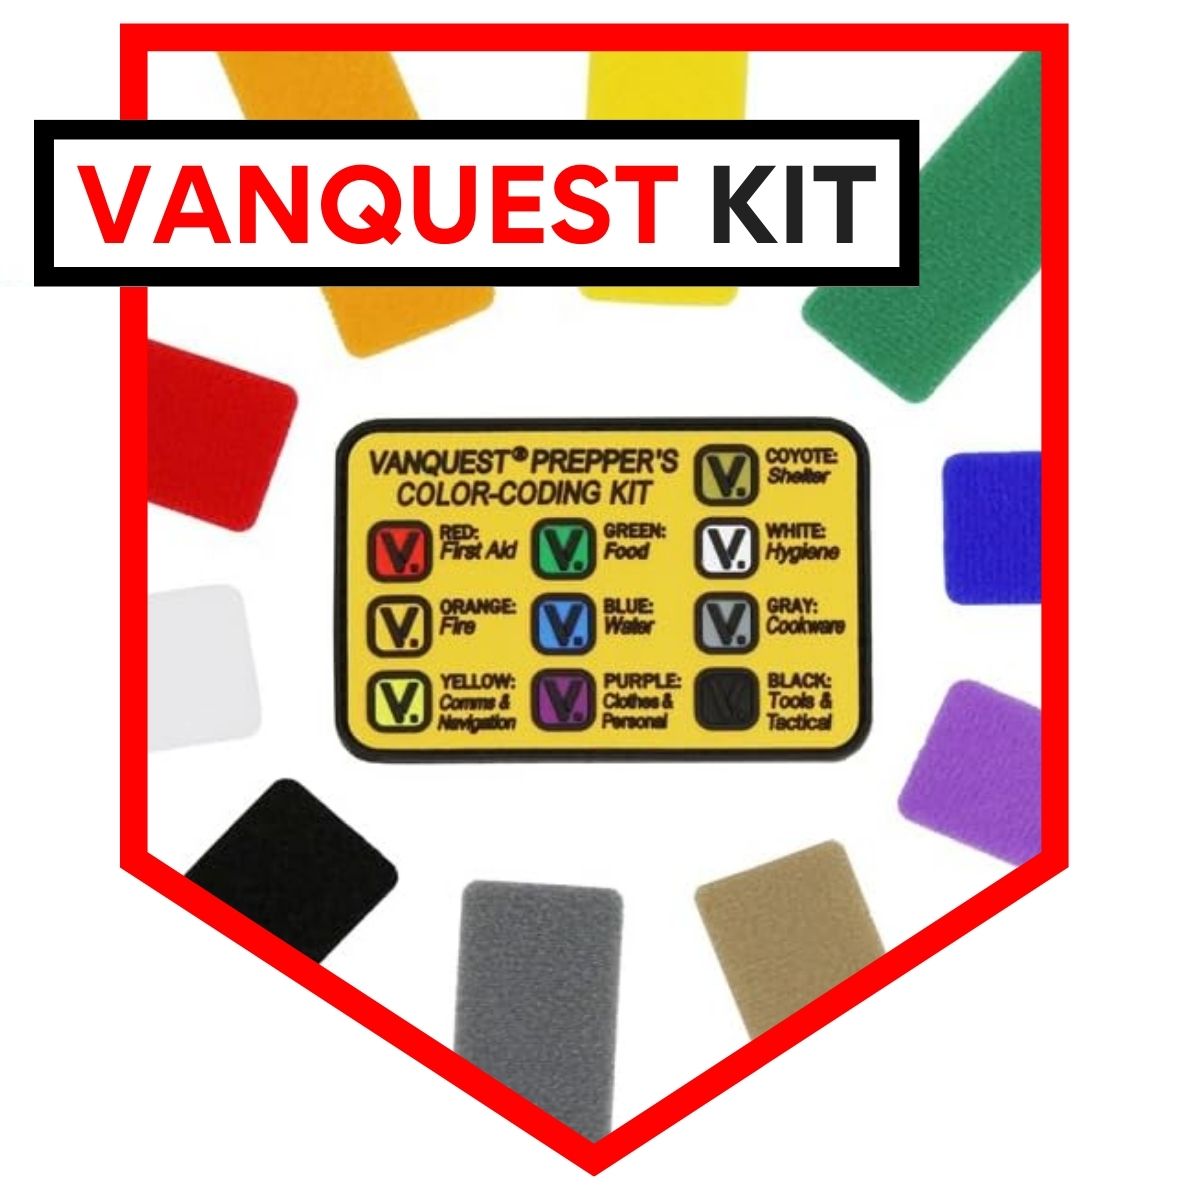 Vanquest Prepper's Color-Coding Kit